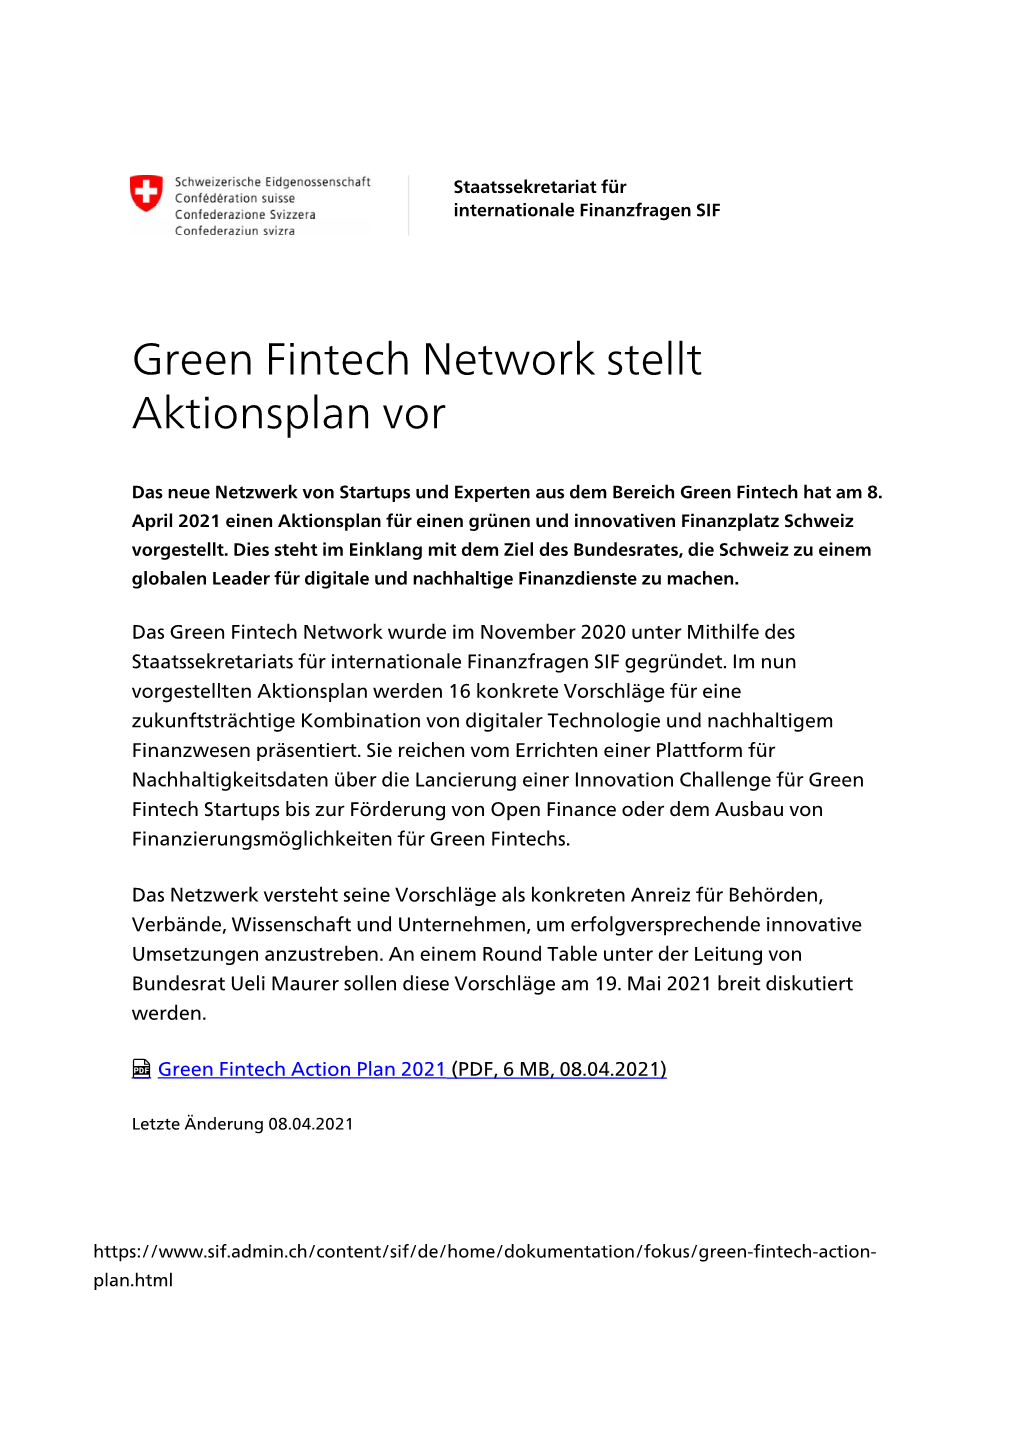 Green Fintech Network Stellt Aktionsplan Vor